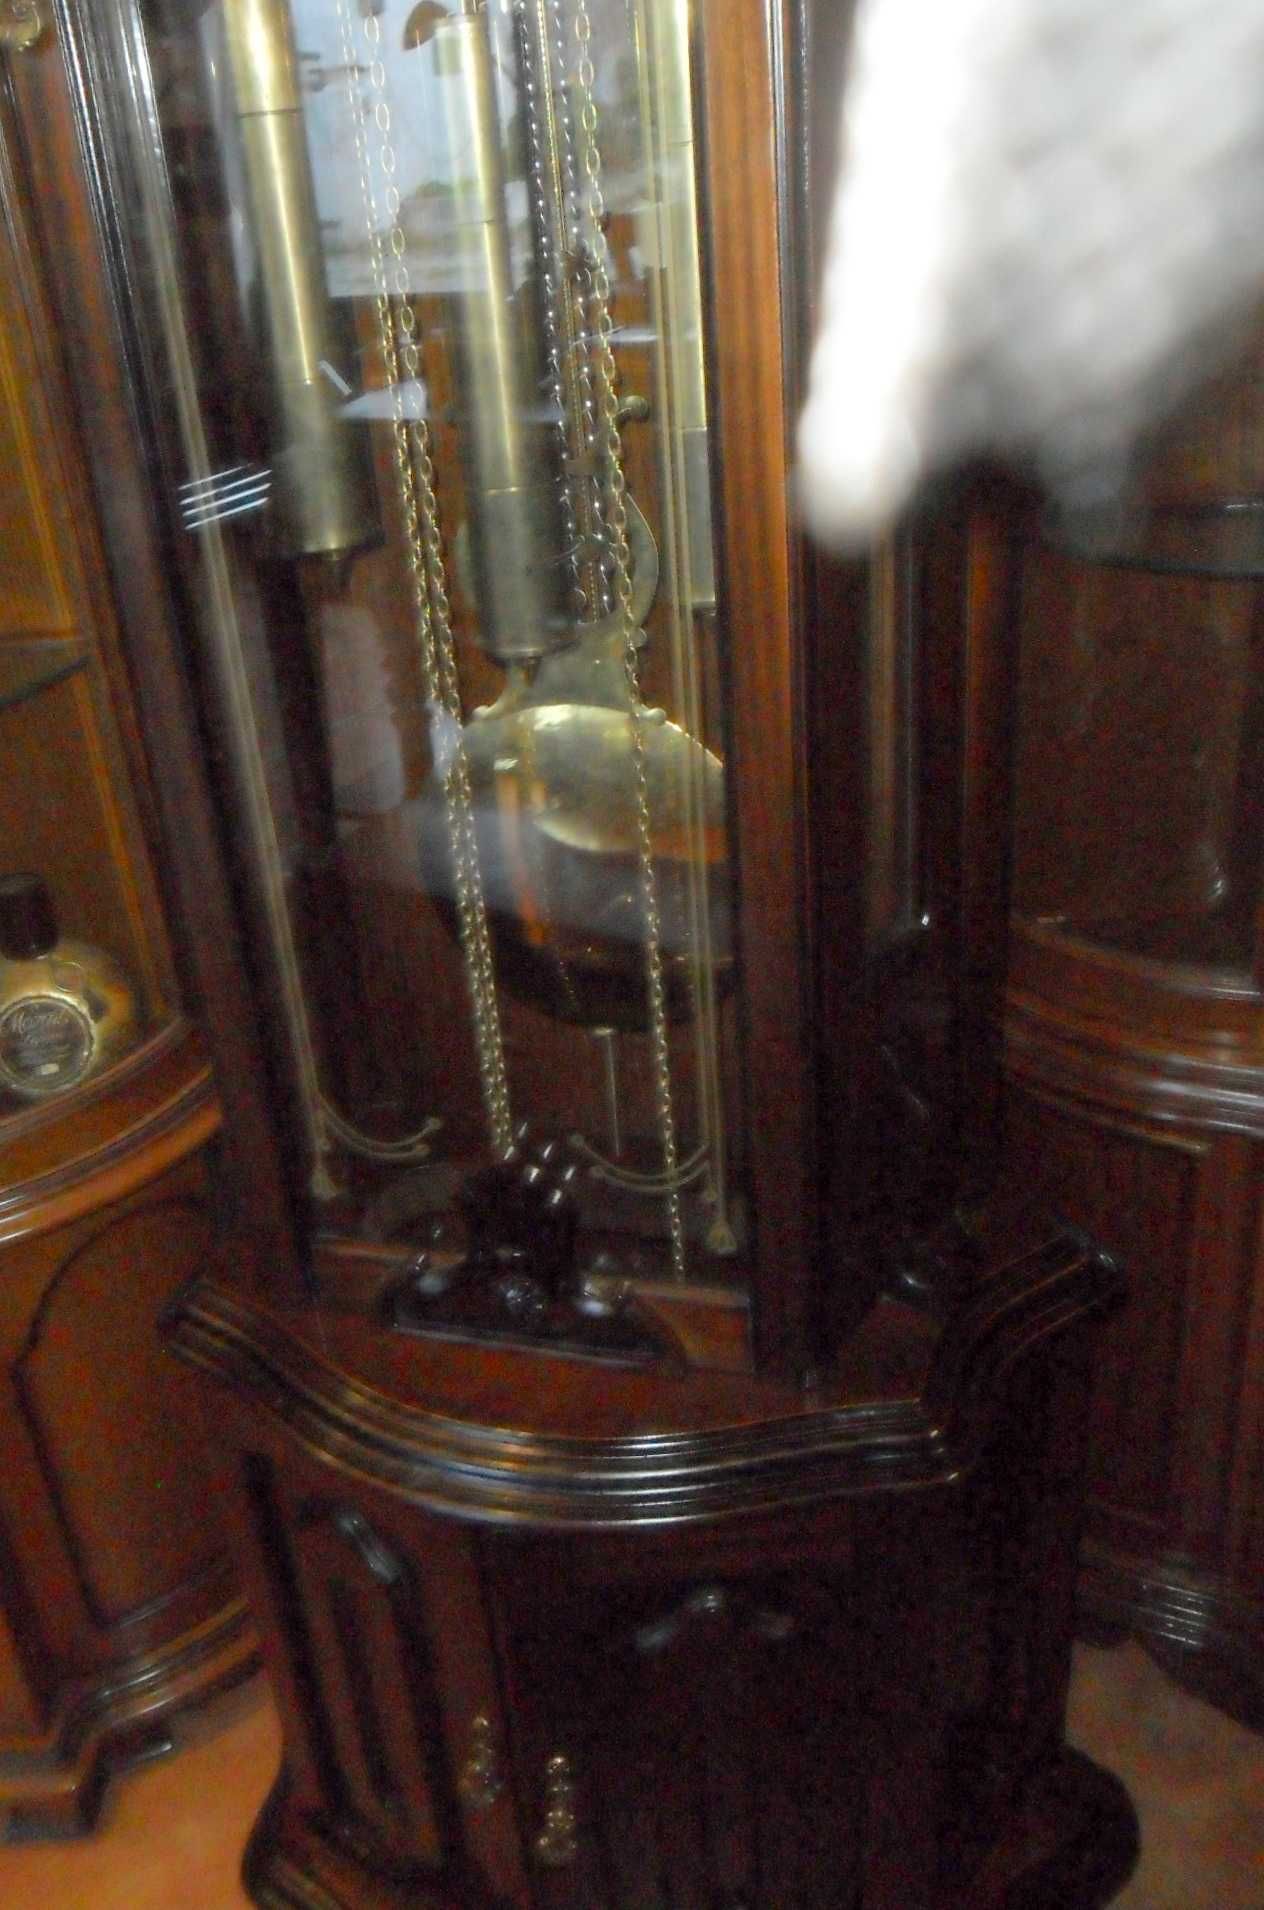 Relógio de sala com pêndulos e pesos